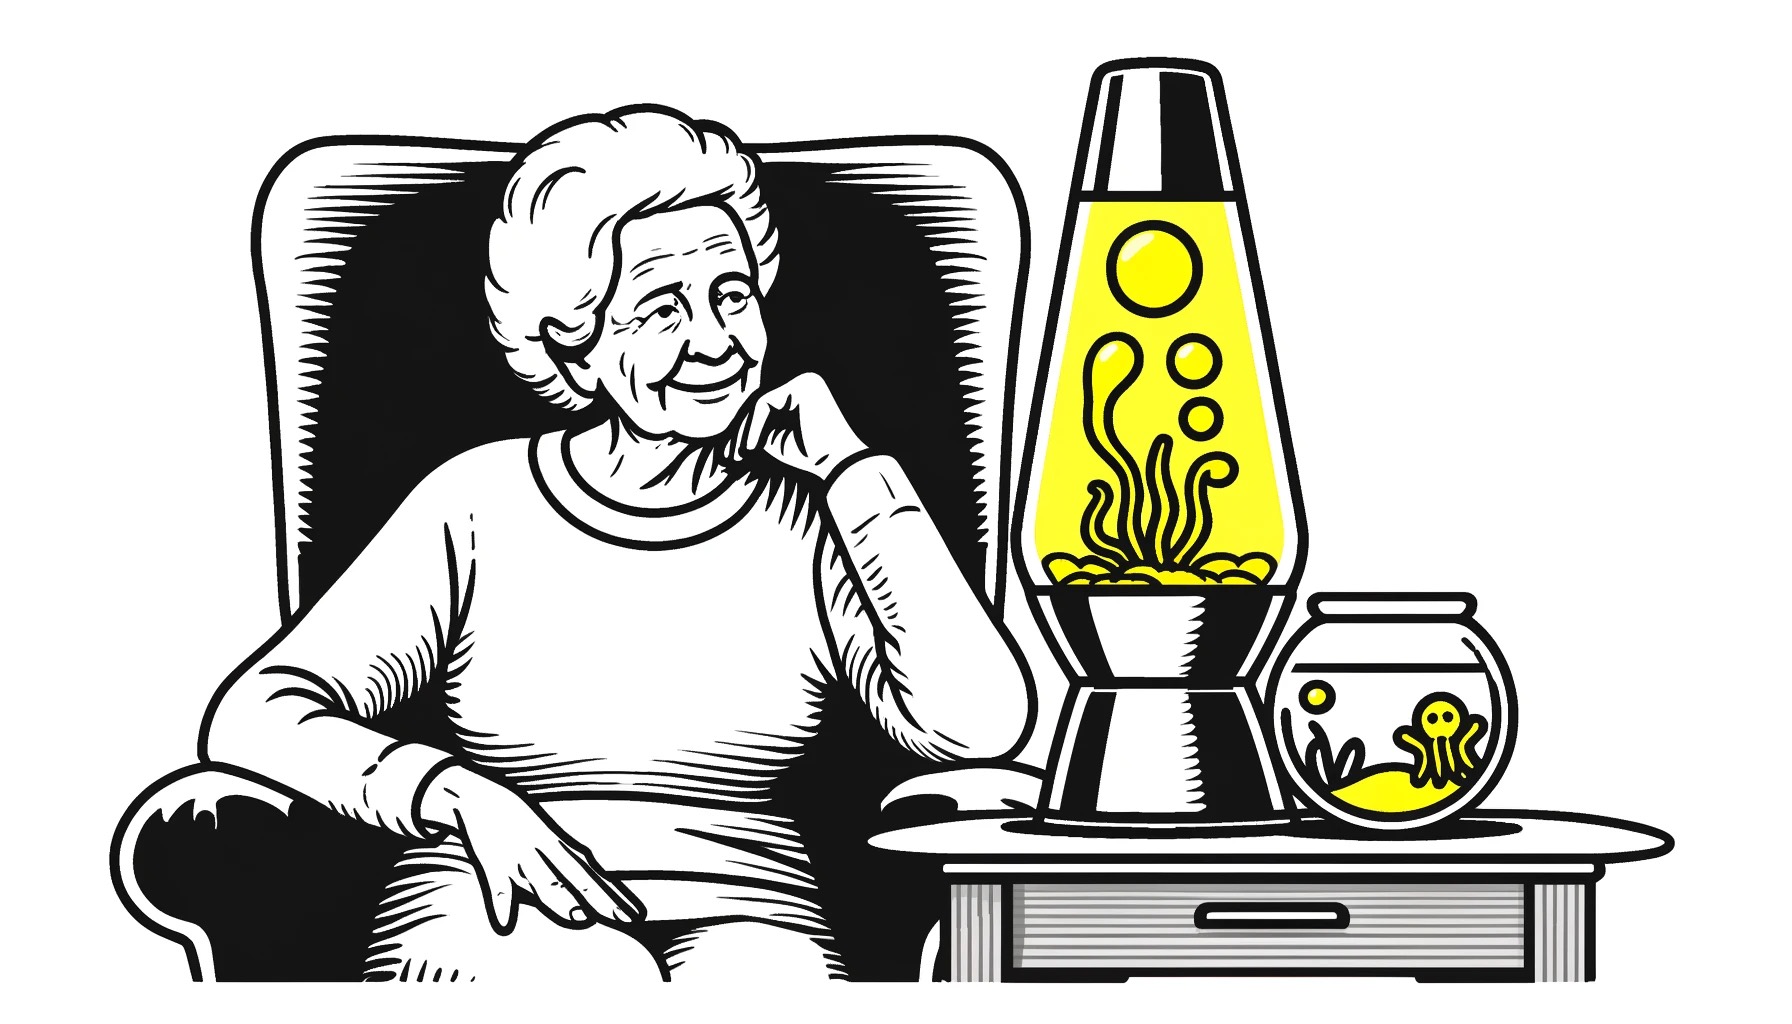 Oudere vrouw met dementie  is tevreden met een lavalamp